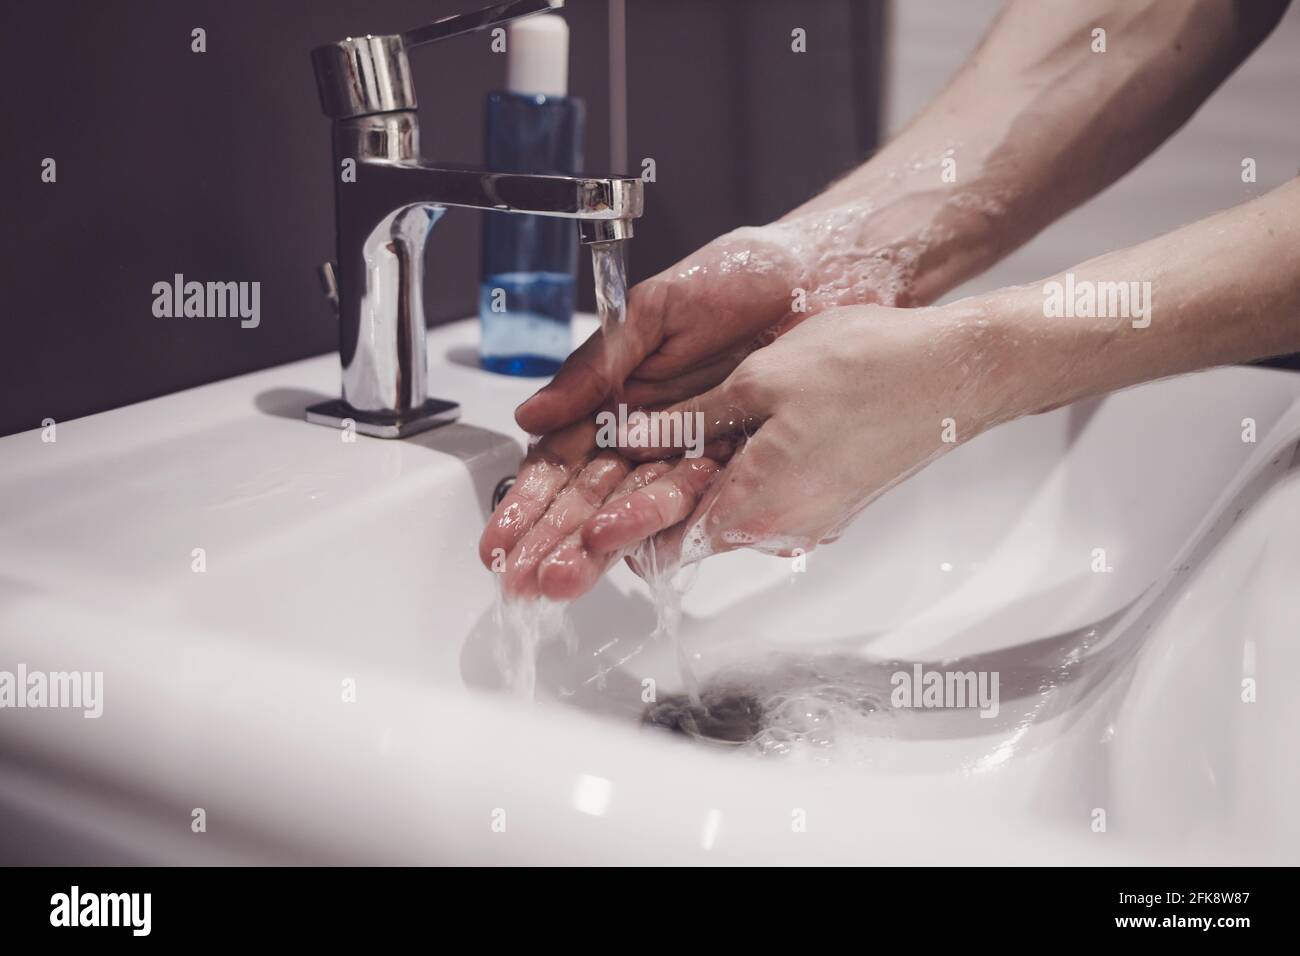 homme montrant l'hygiène des mains se laver les mains avec du savon dans de l'eau chaude pour la protection des germes du coronavirus. Arrêter le virus corona Banque D'Images